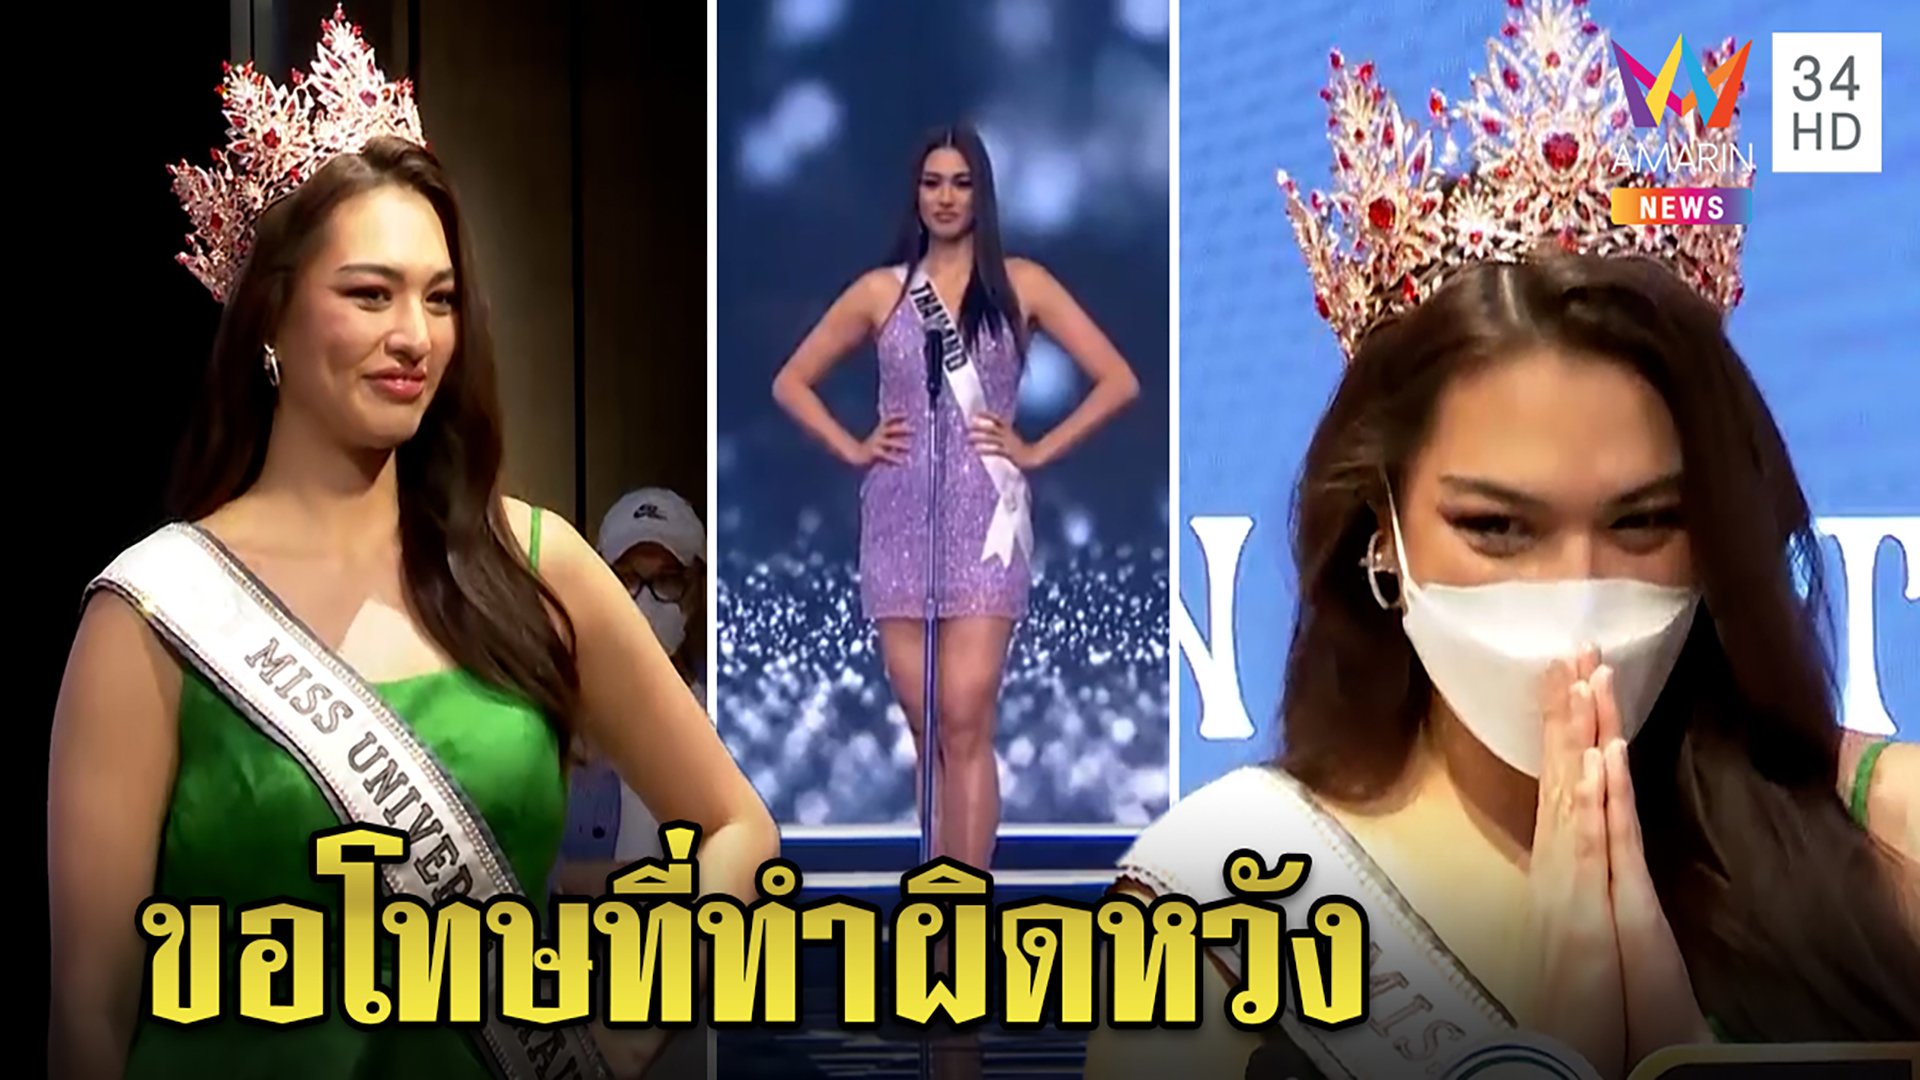 "แอนชิลี"กลับไทยขอโทษทำให้คนไทยผิดหวัง พร้อมปรับปรุงทุกคำติโต้กระแสปล่อยตัวอ้วน | ทุบโต๊ะข่าว | 18 ธ.ค. 64 | AMARIN TVHD34